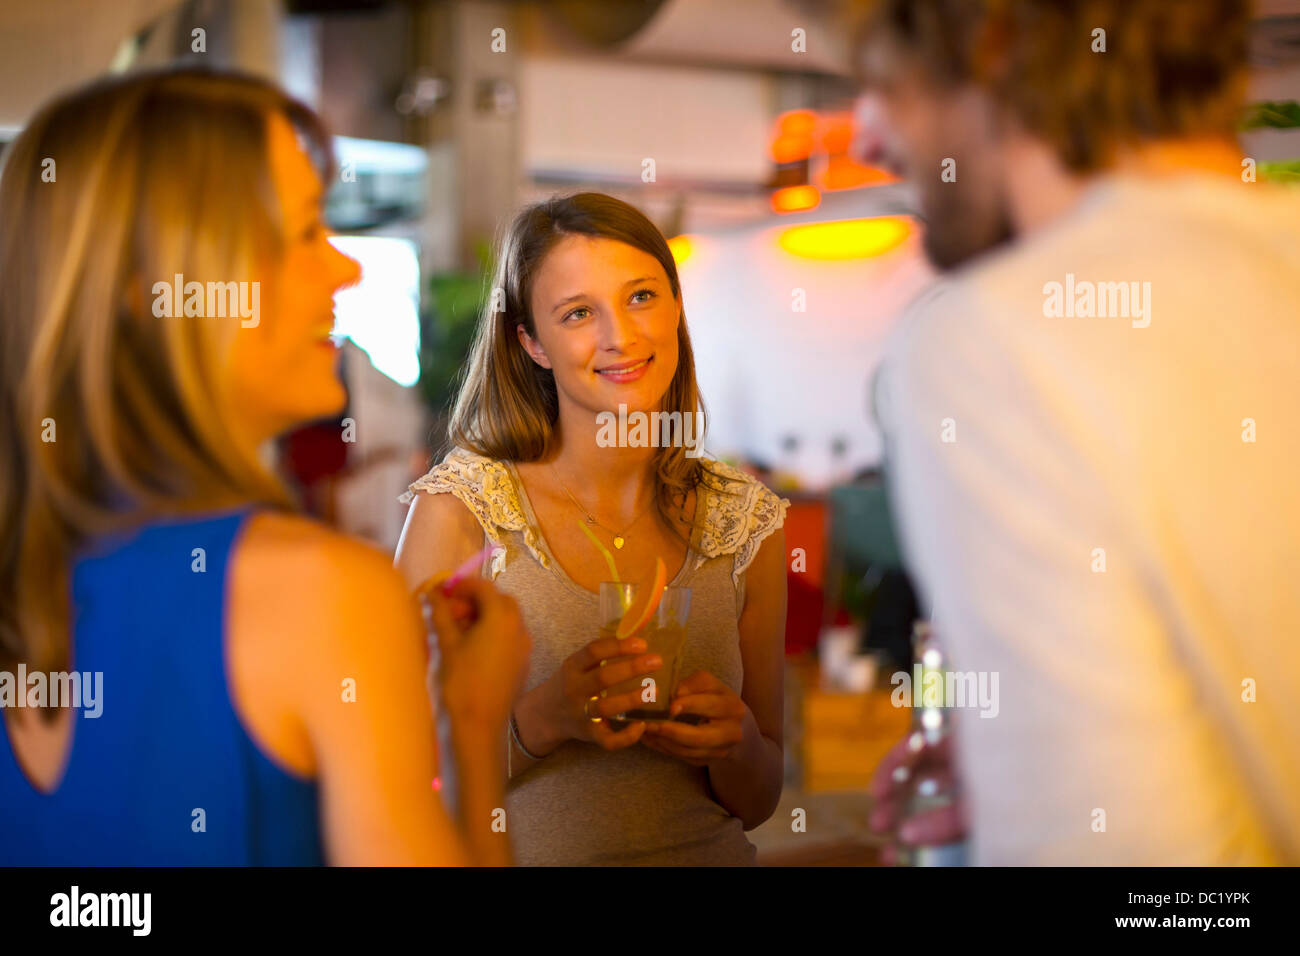 Freunde Getränken zusammen in bar Stockfoto